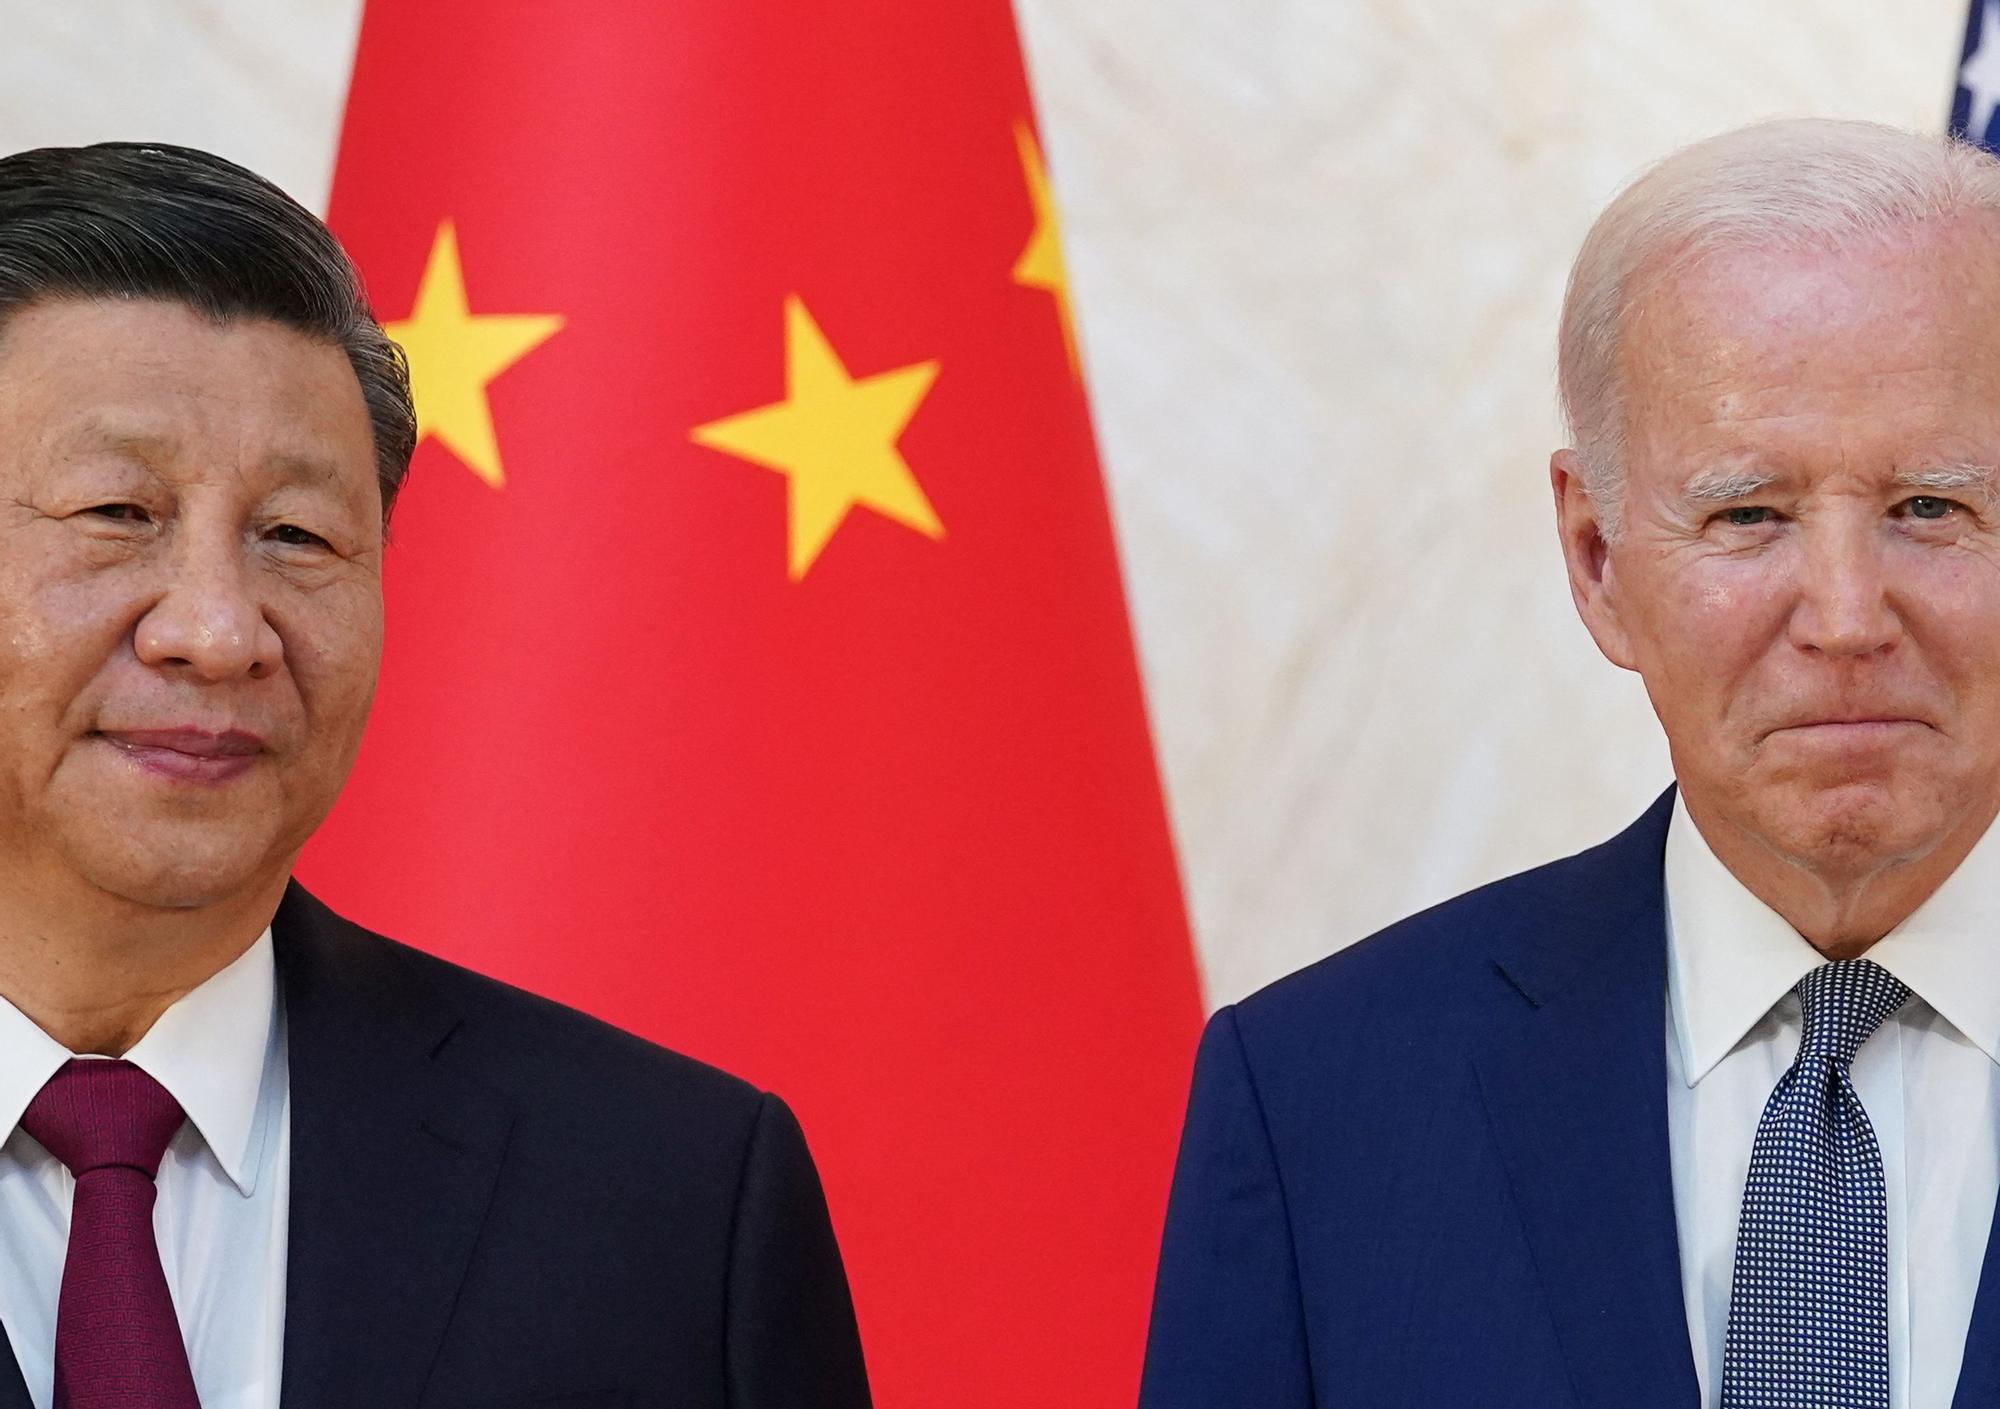 El acercamiento diplomático entre EEUU y China pincha tras el incidente del globo